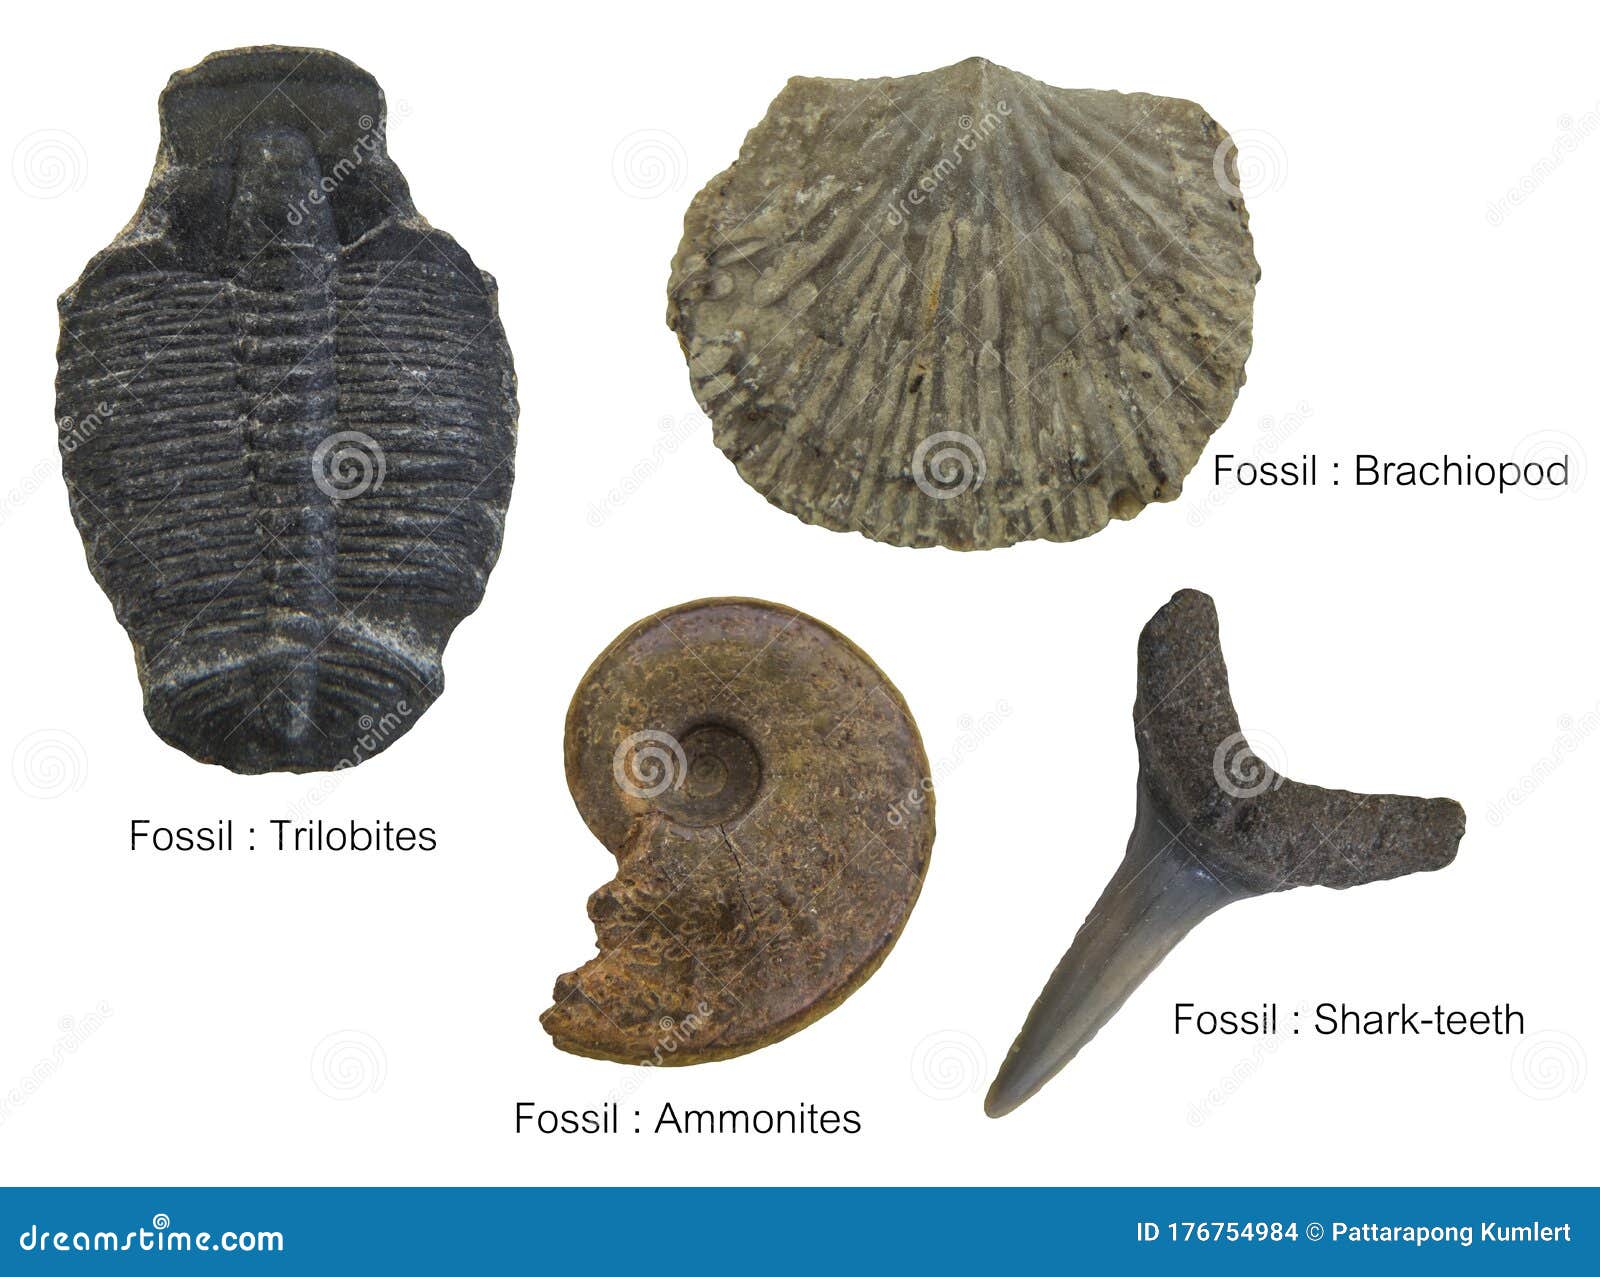 fossils specimens, four fossils specimens